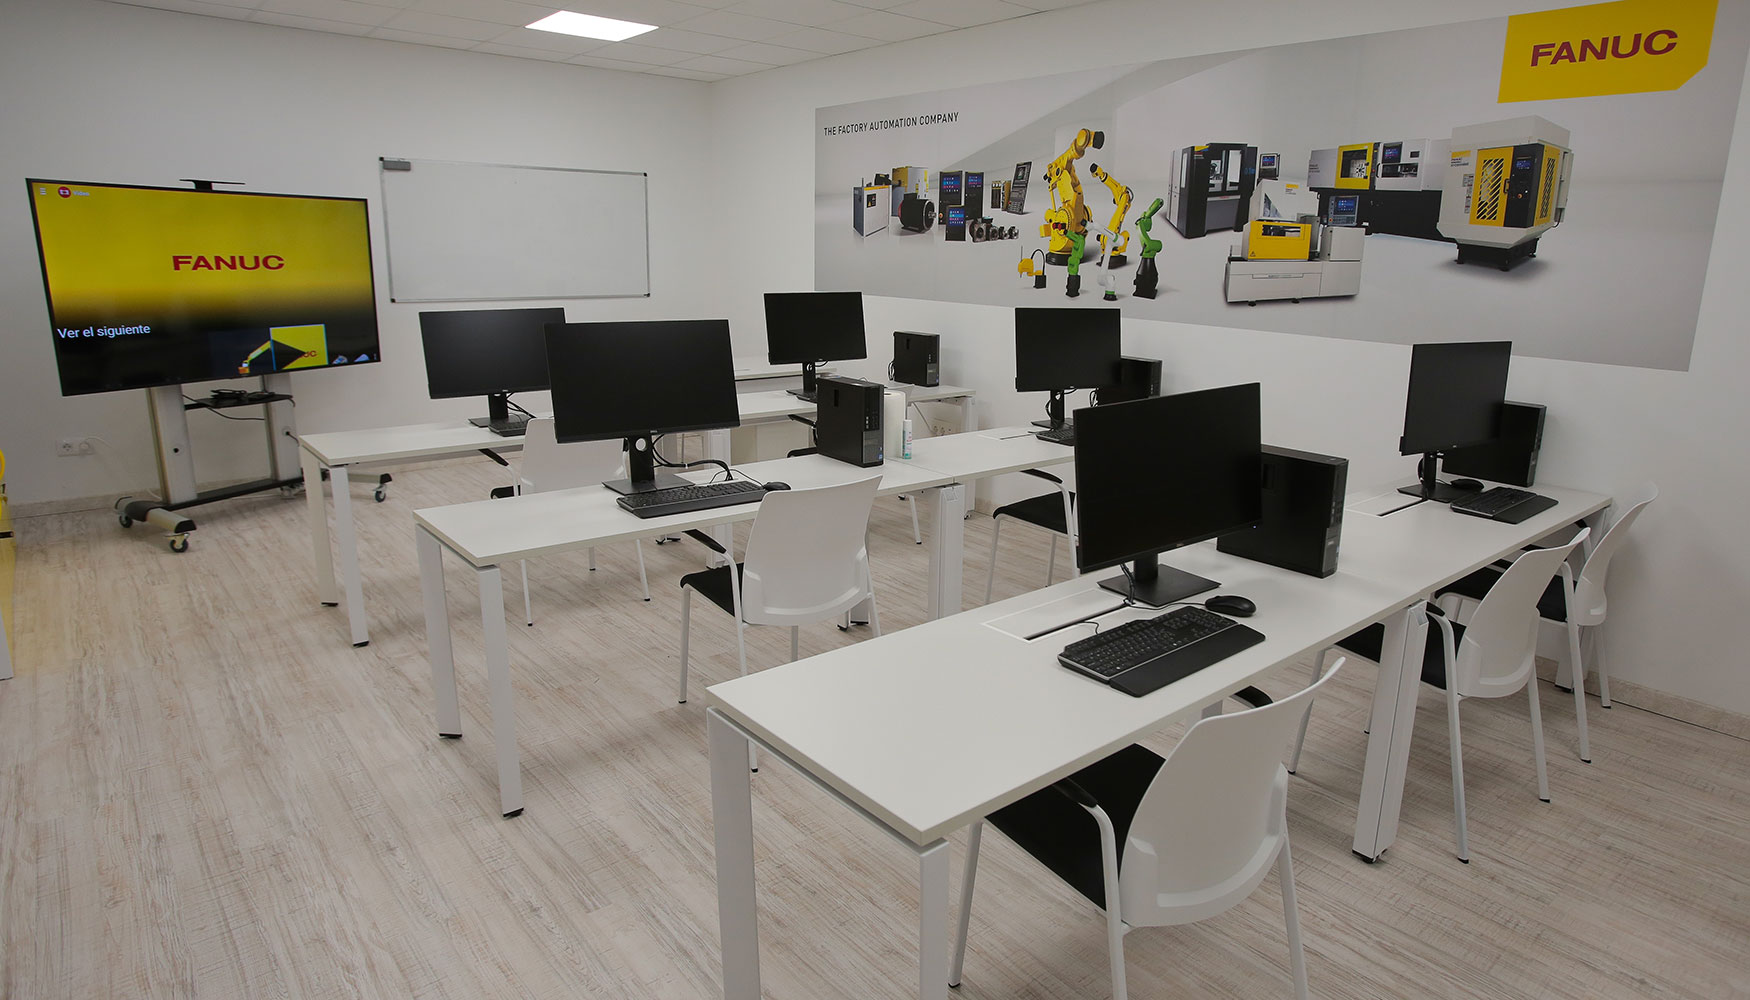 Las nuevas instalaciones de Fanuc en Madrid cuentan con varias salas para su servicio de Formacin 'Fanuc Academy'...